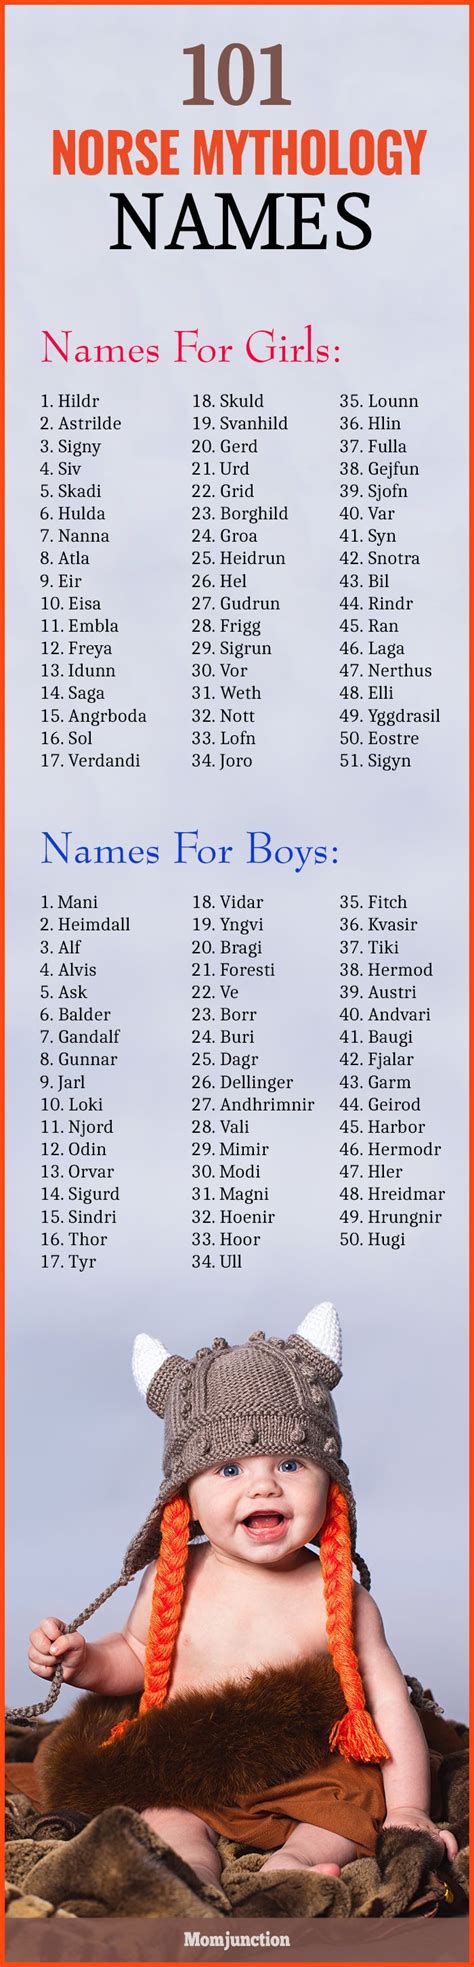 101 Most Popular Norse Mythology Names With Meanings Mythologie Namen